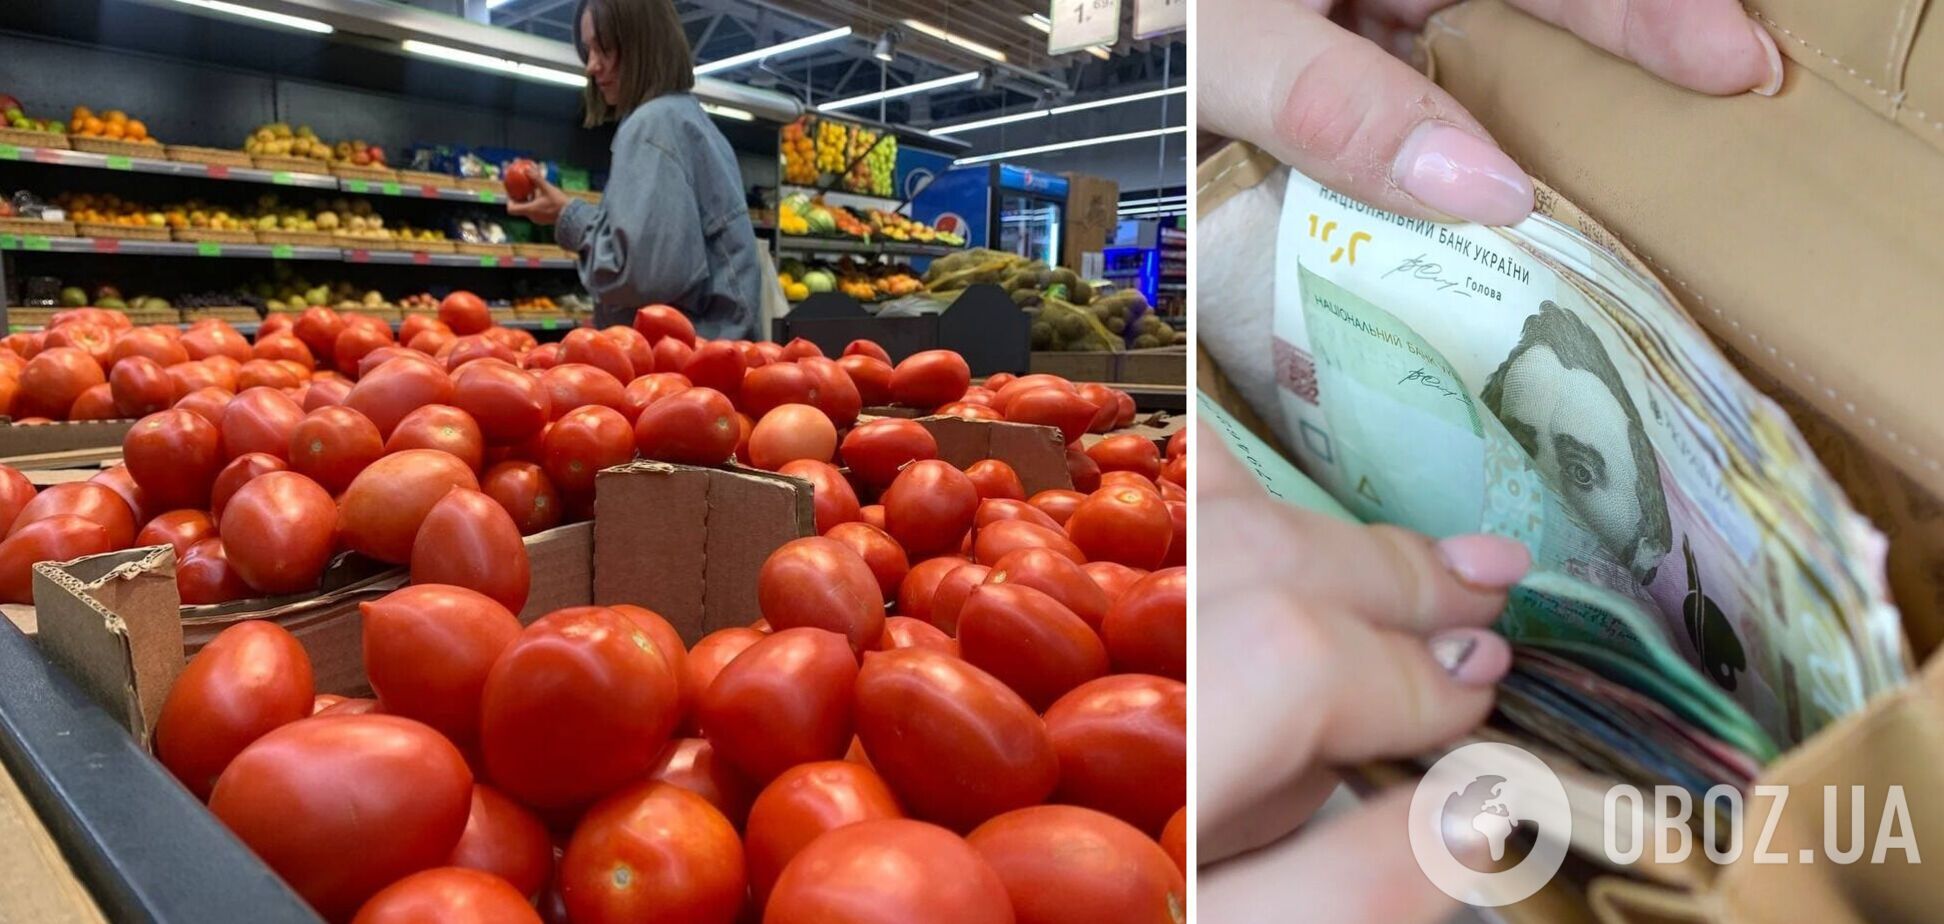 Цены на овощи существенно выросли